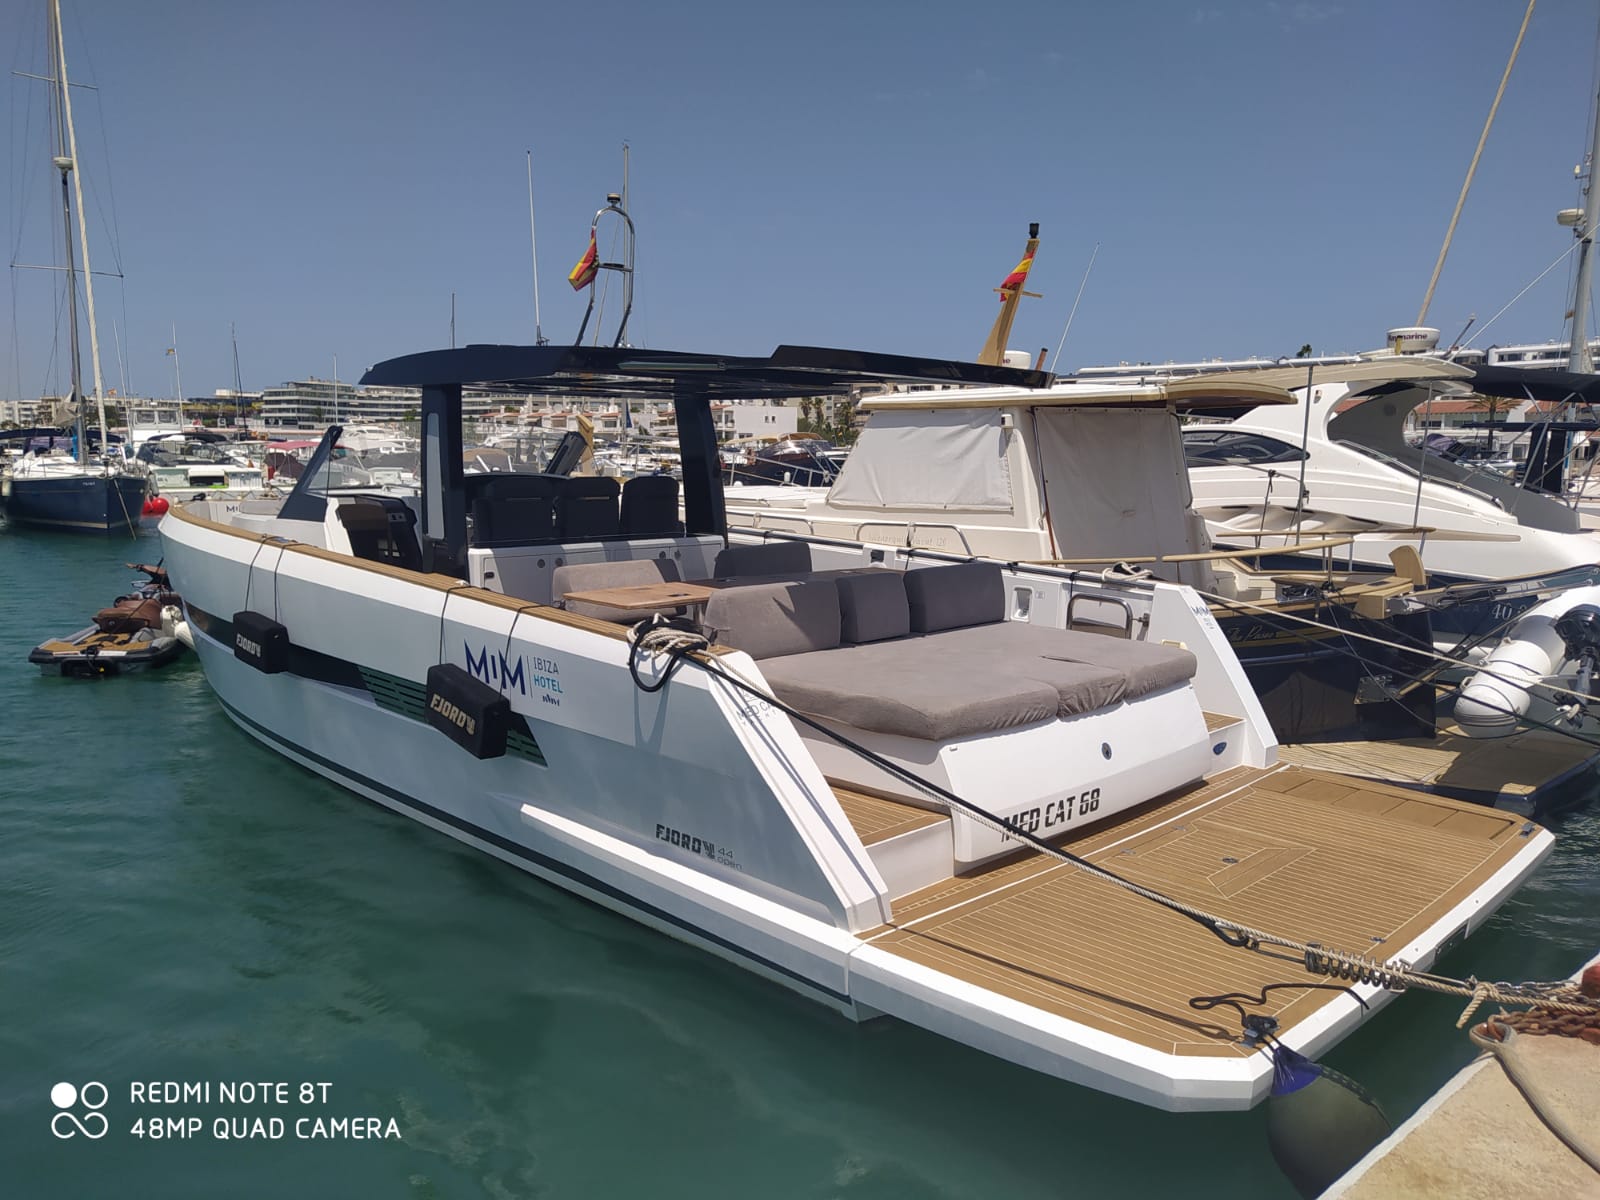 Fjord 44 Open - Superyacht charter Italy & Boat hire in Spain Balearic Islands Ibiza and Formentera Ibiza Ibiza Marina Botafoch 1